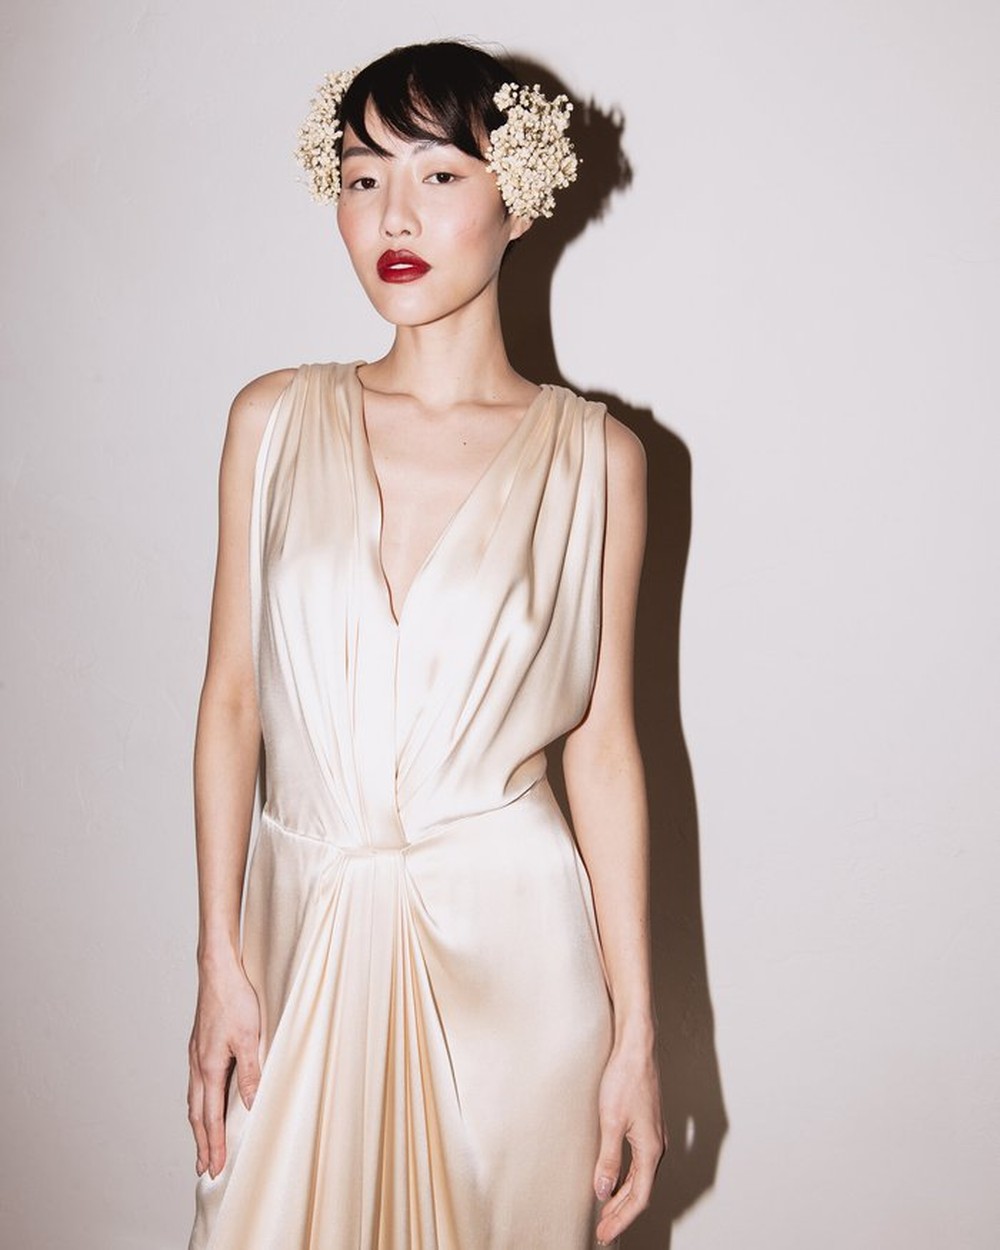 Trào lưu săn lùng váy cưới cổ điển mở đường cho ngành kinh doanh đồ hiệu vintage - Ảnh 5.